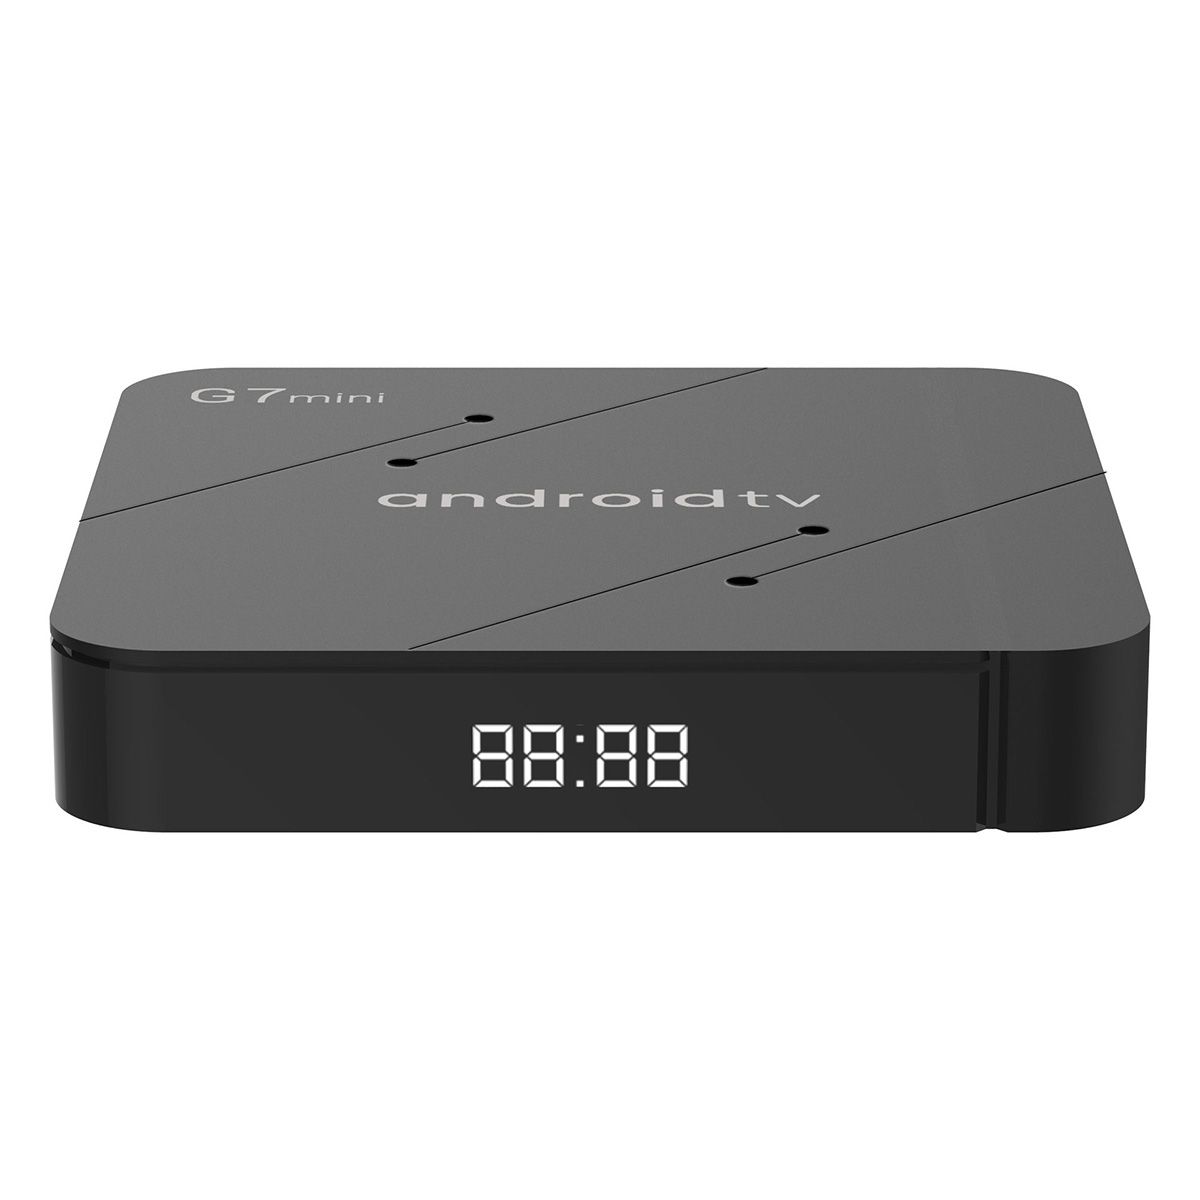 TV Box G7mini Android TV 11 WiFi Bluetooth Điều Khiển Bằng Giọng Nói